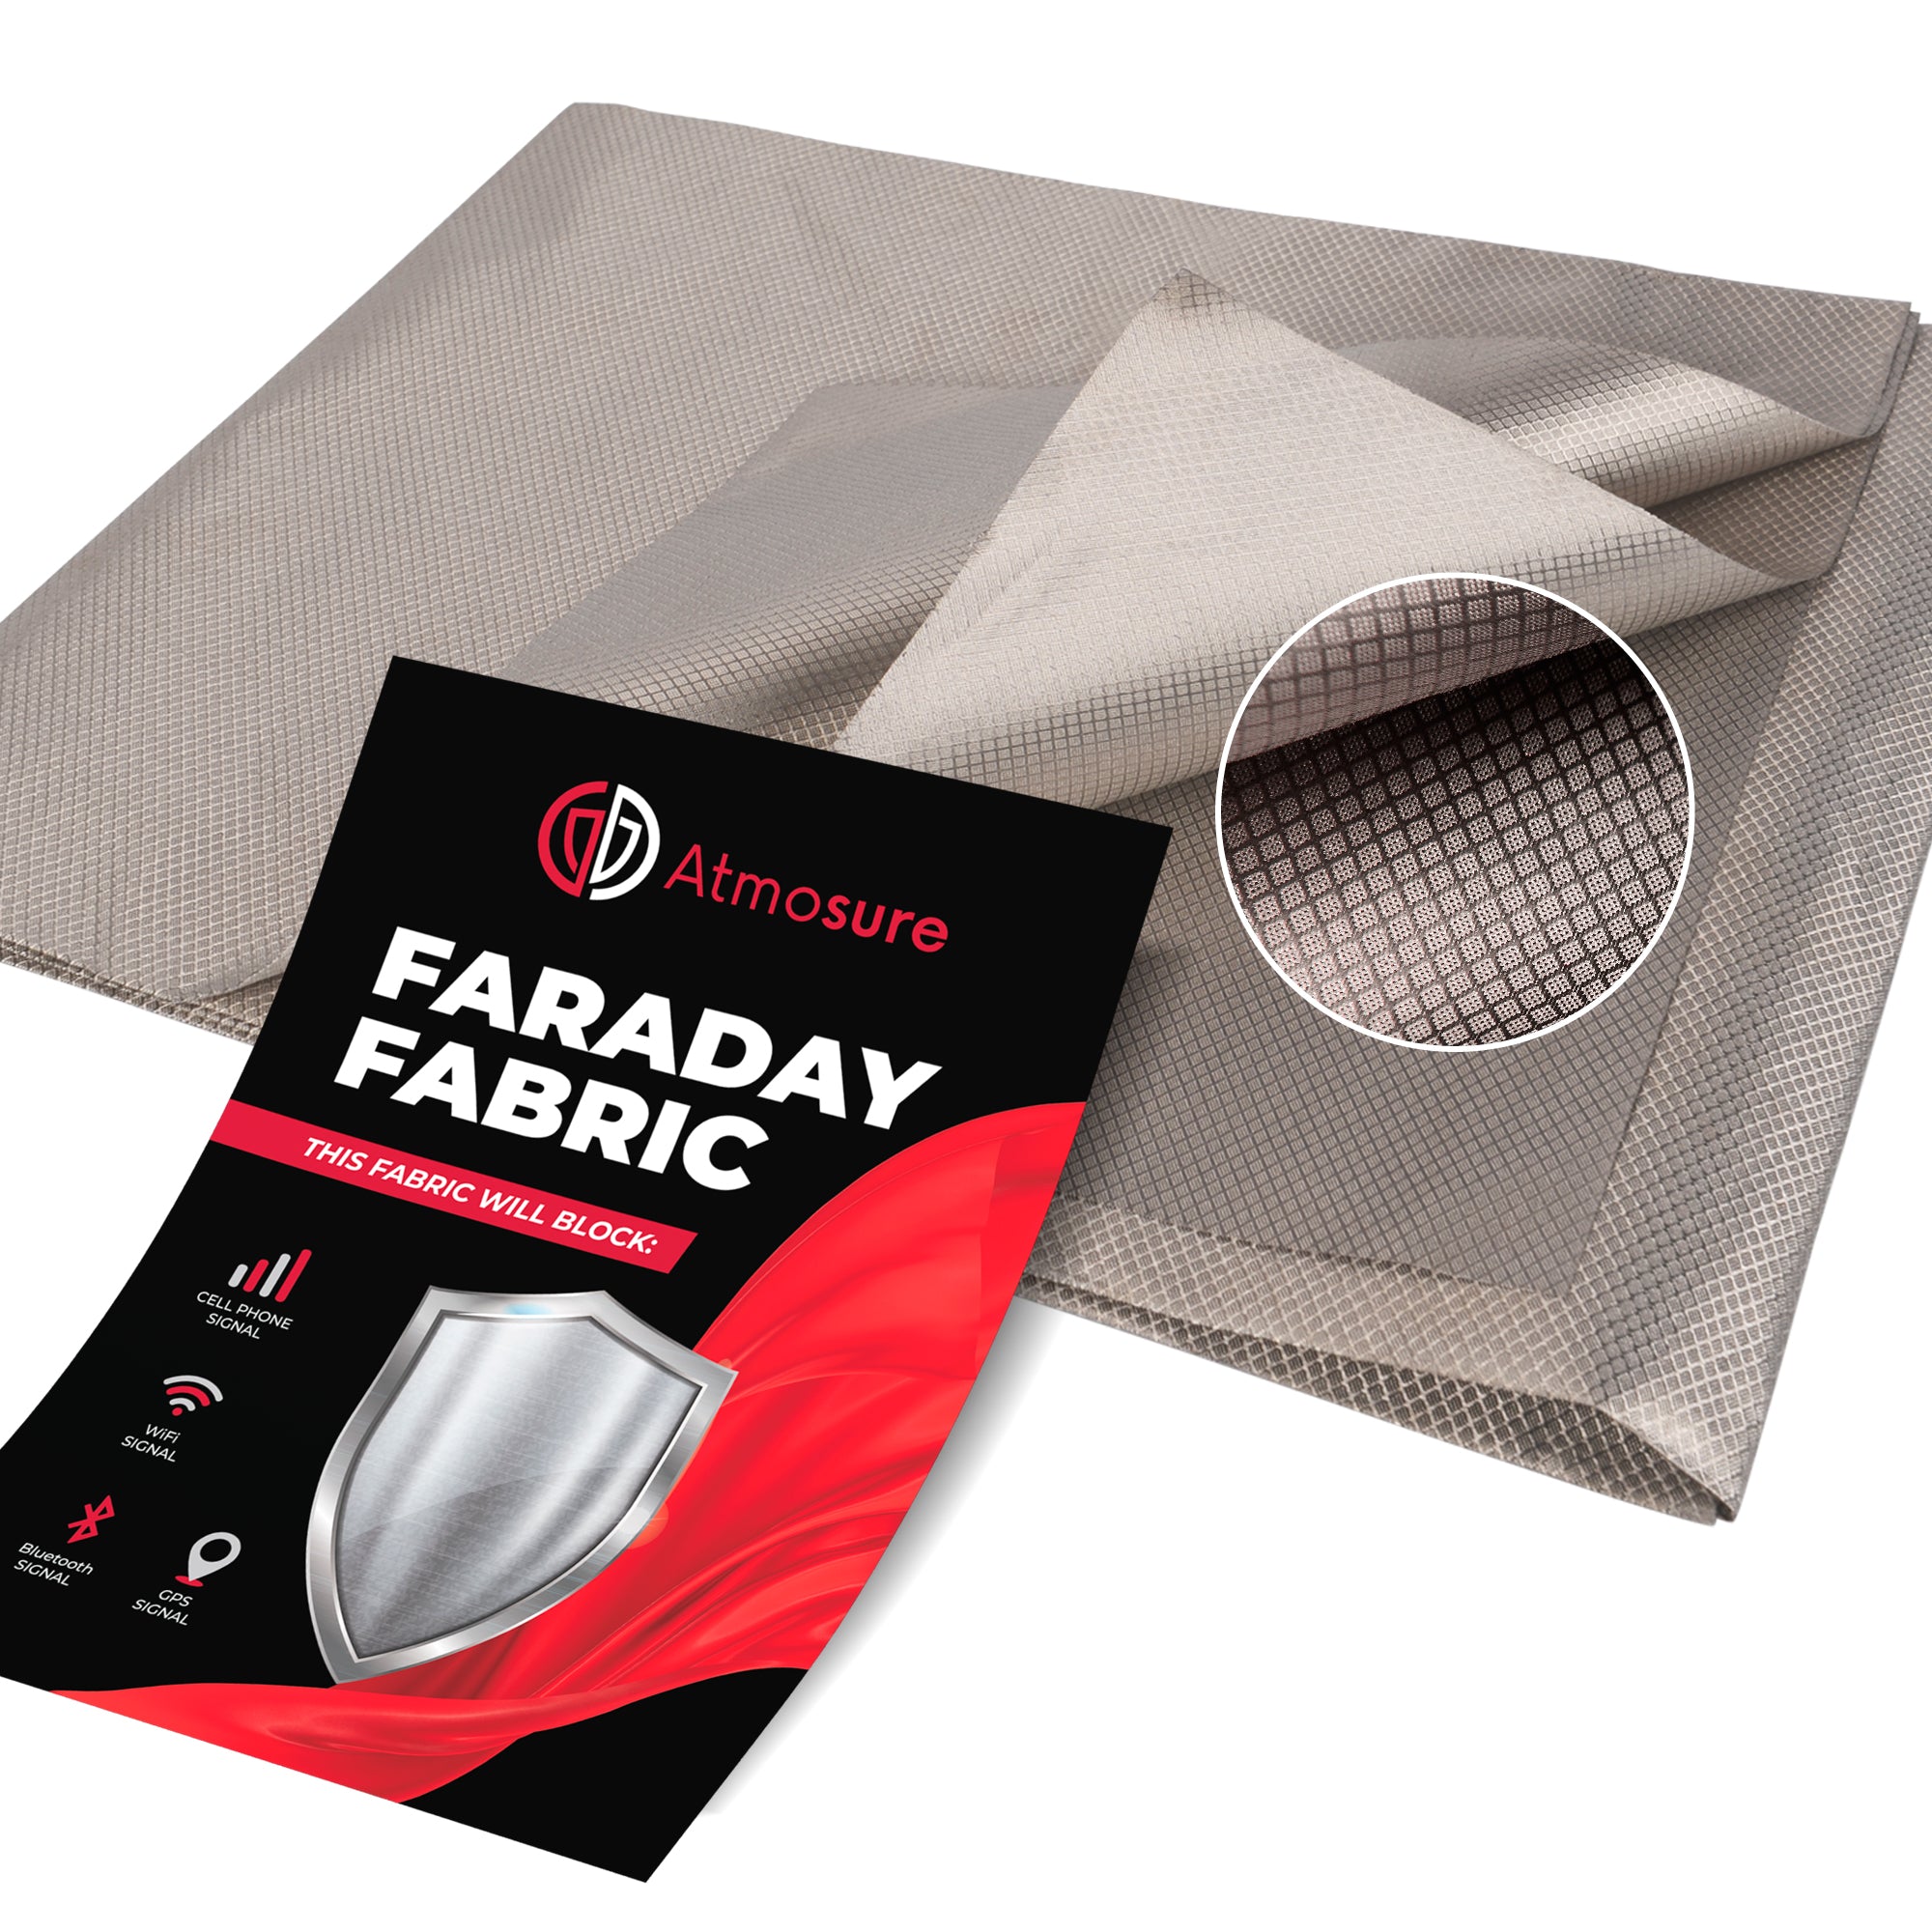 Faraday Fabric (44 x 36) — RF, EMI, & RFID Shielding for 99% EMF